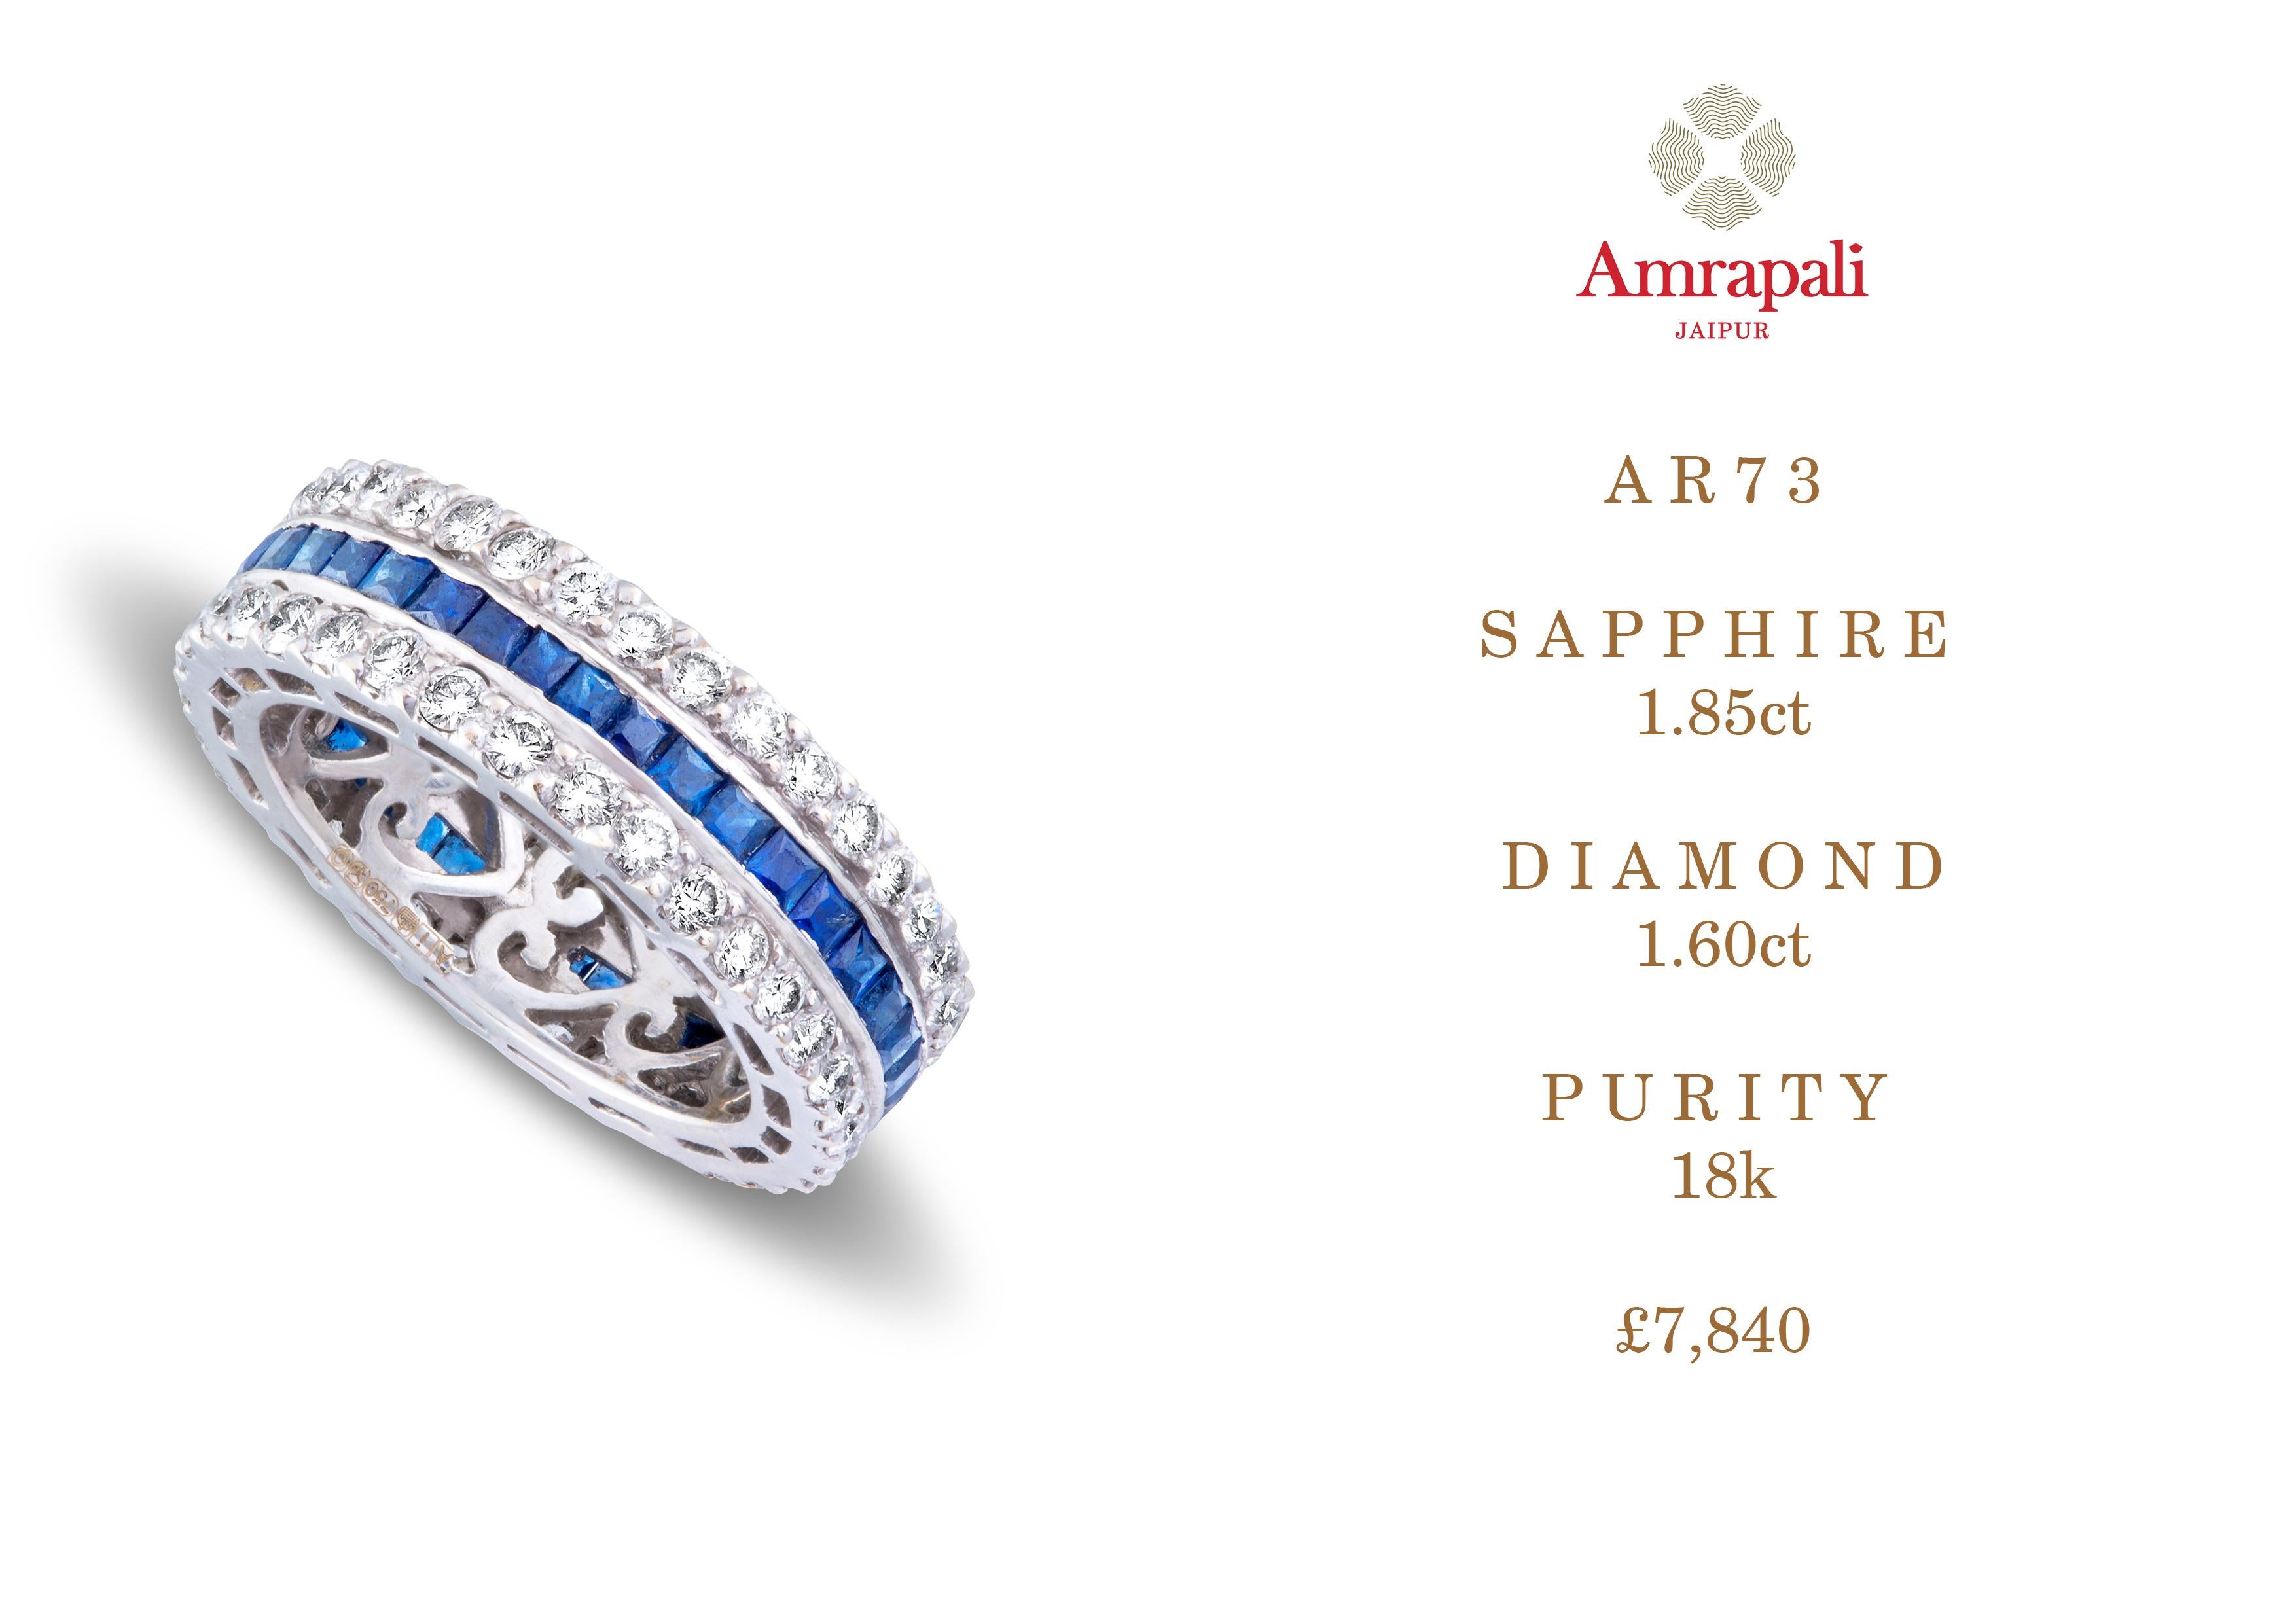 Amrapali Jewels 18k gold, Sapphire & Diamond ring  

Sapphire weight - 1.85ct
Diamond weight - 1.6ct  

Ring size - 51.5


